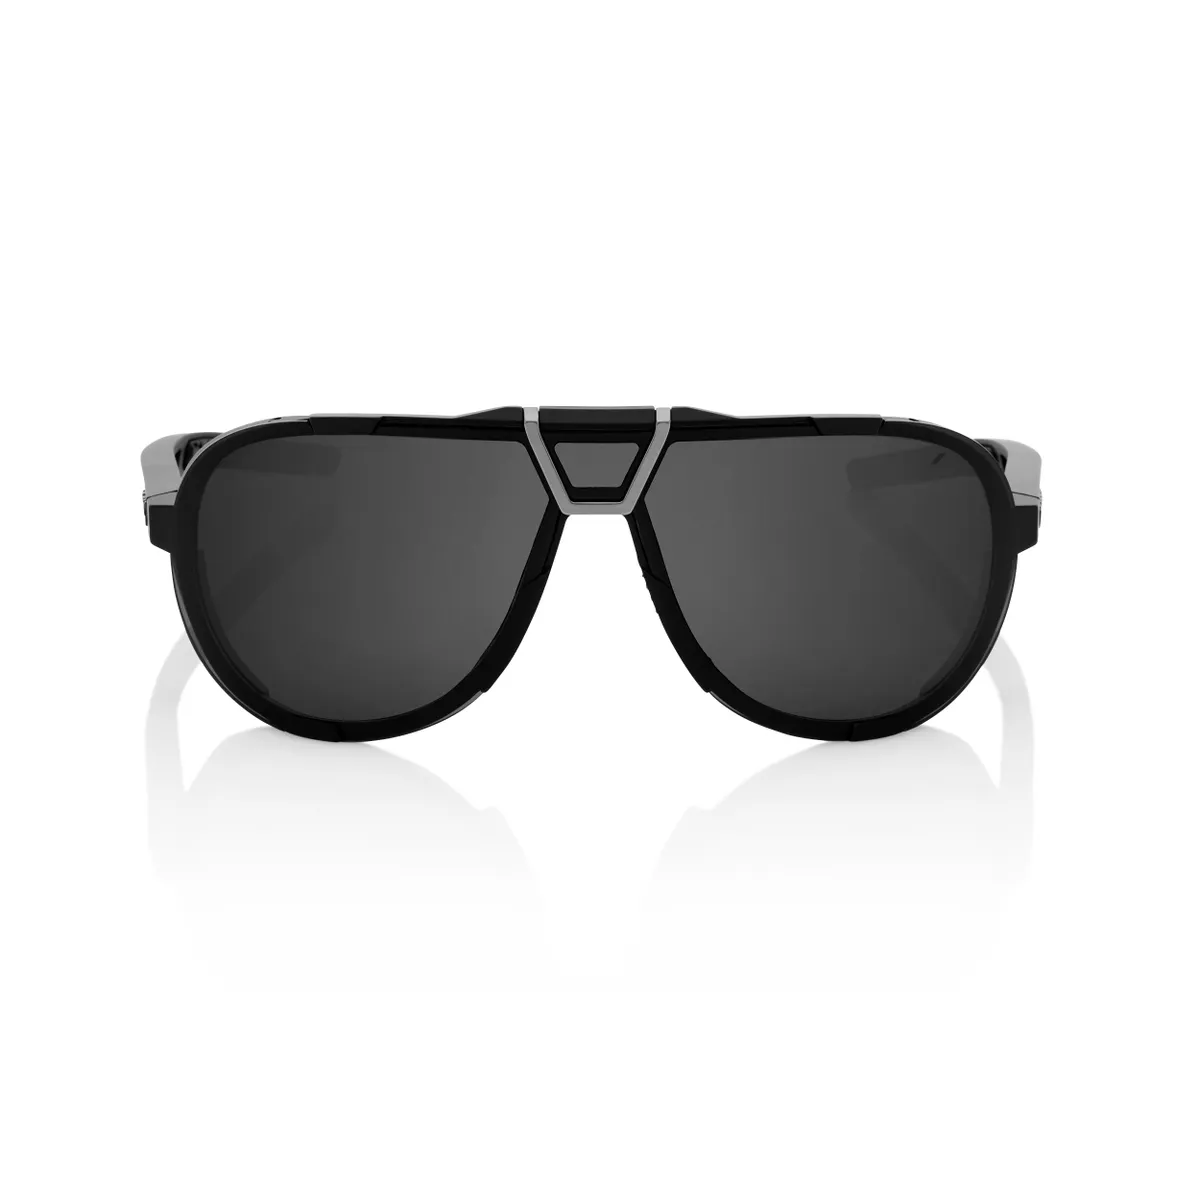 100% Westcraft sunglasses